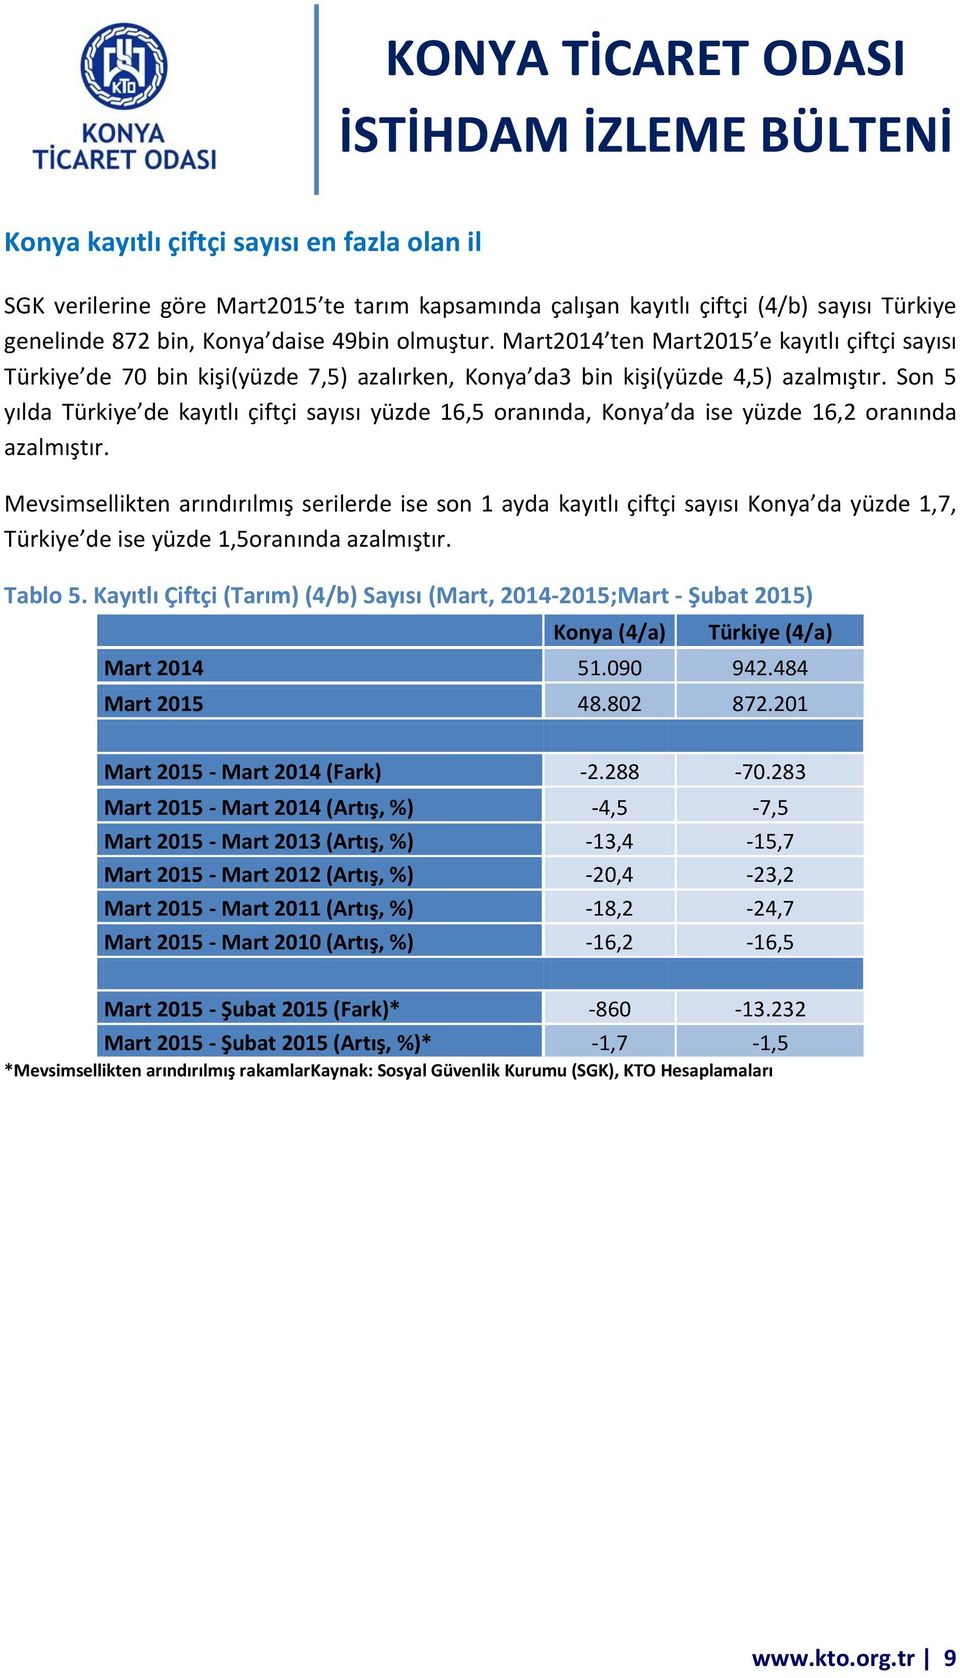 Son 5 yılda Türkiye de kayıtlı çiftçi sayısı yüzde 16,5 oranında, Konya da ise yüzde 16,2 oranında azalmıştır.